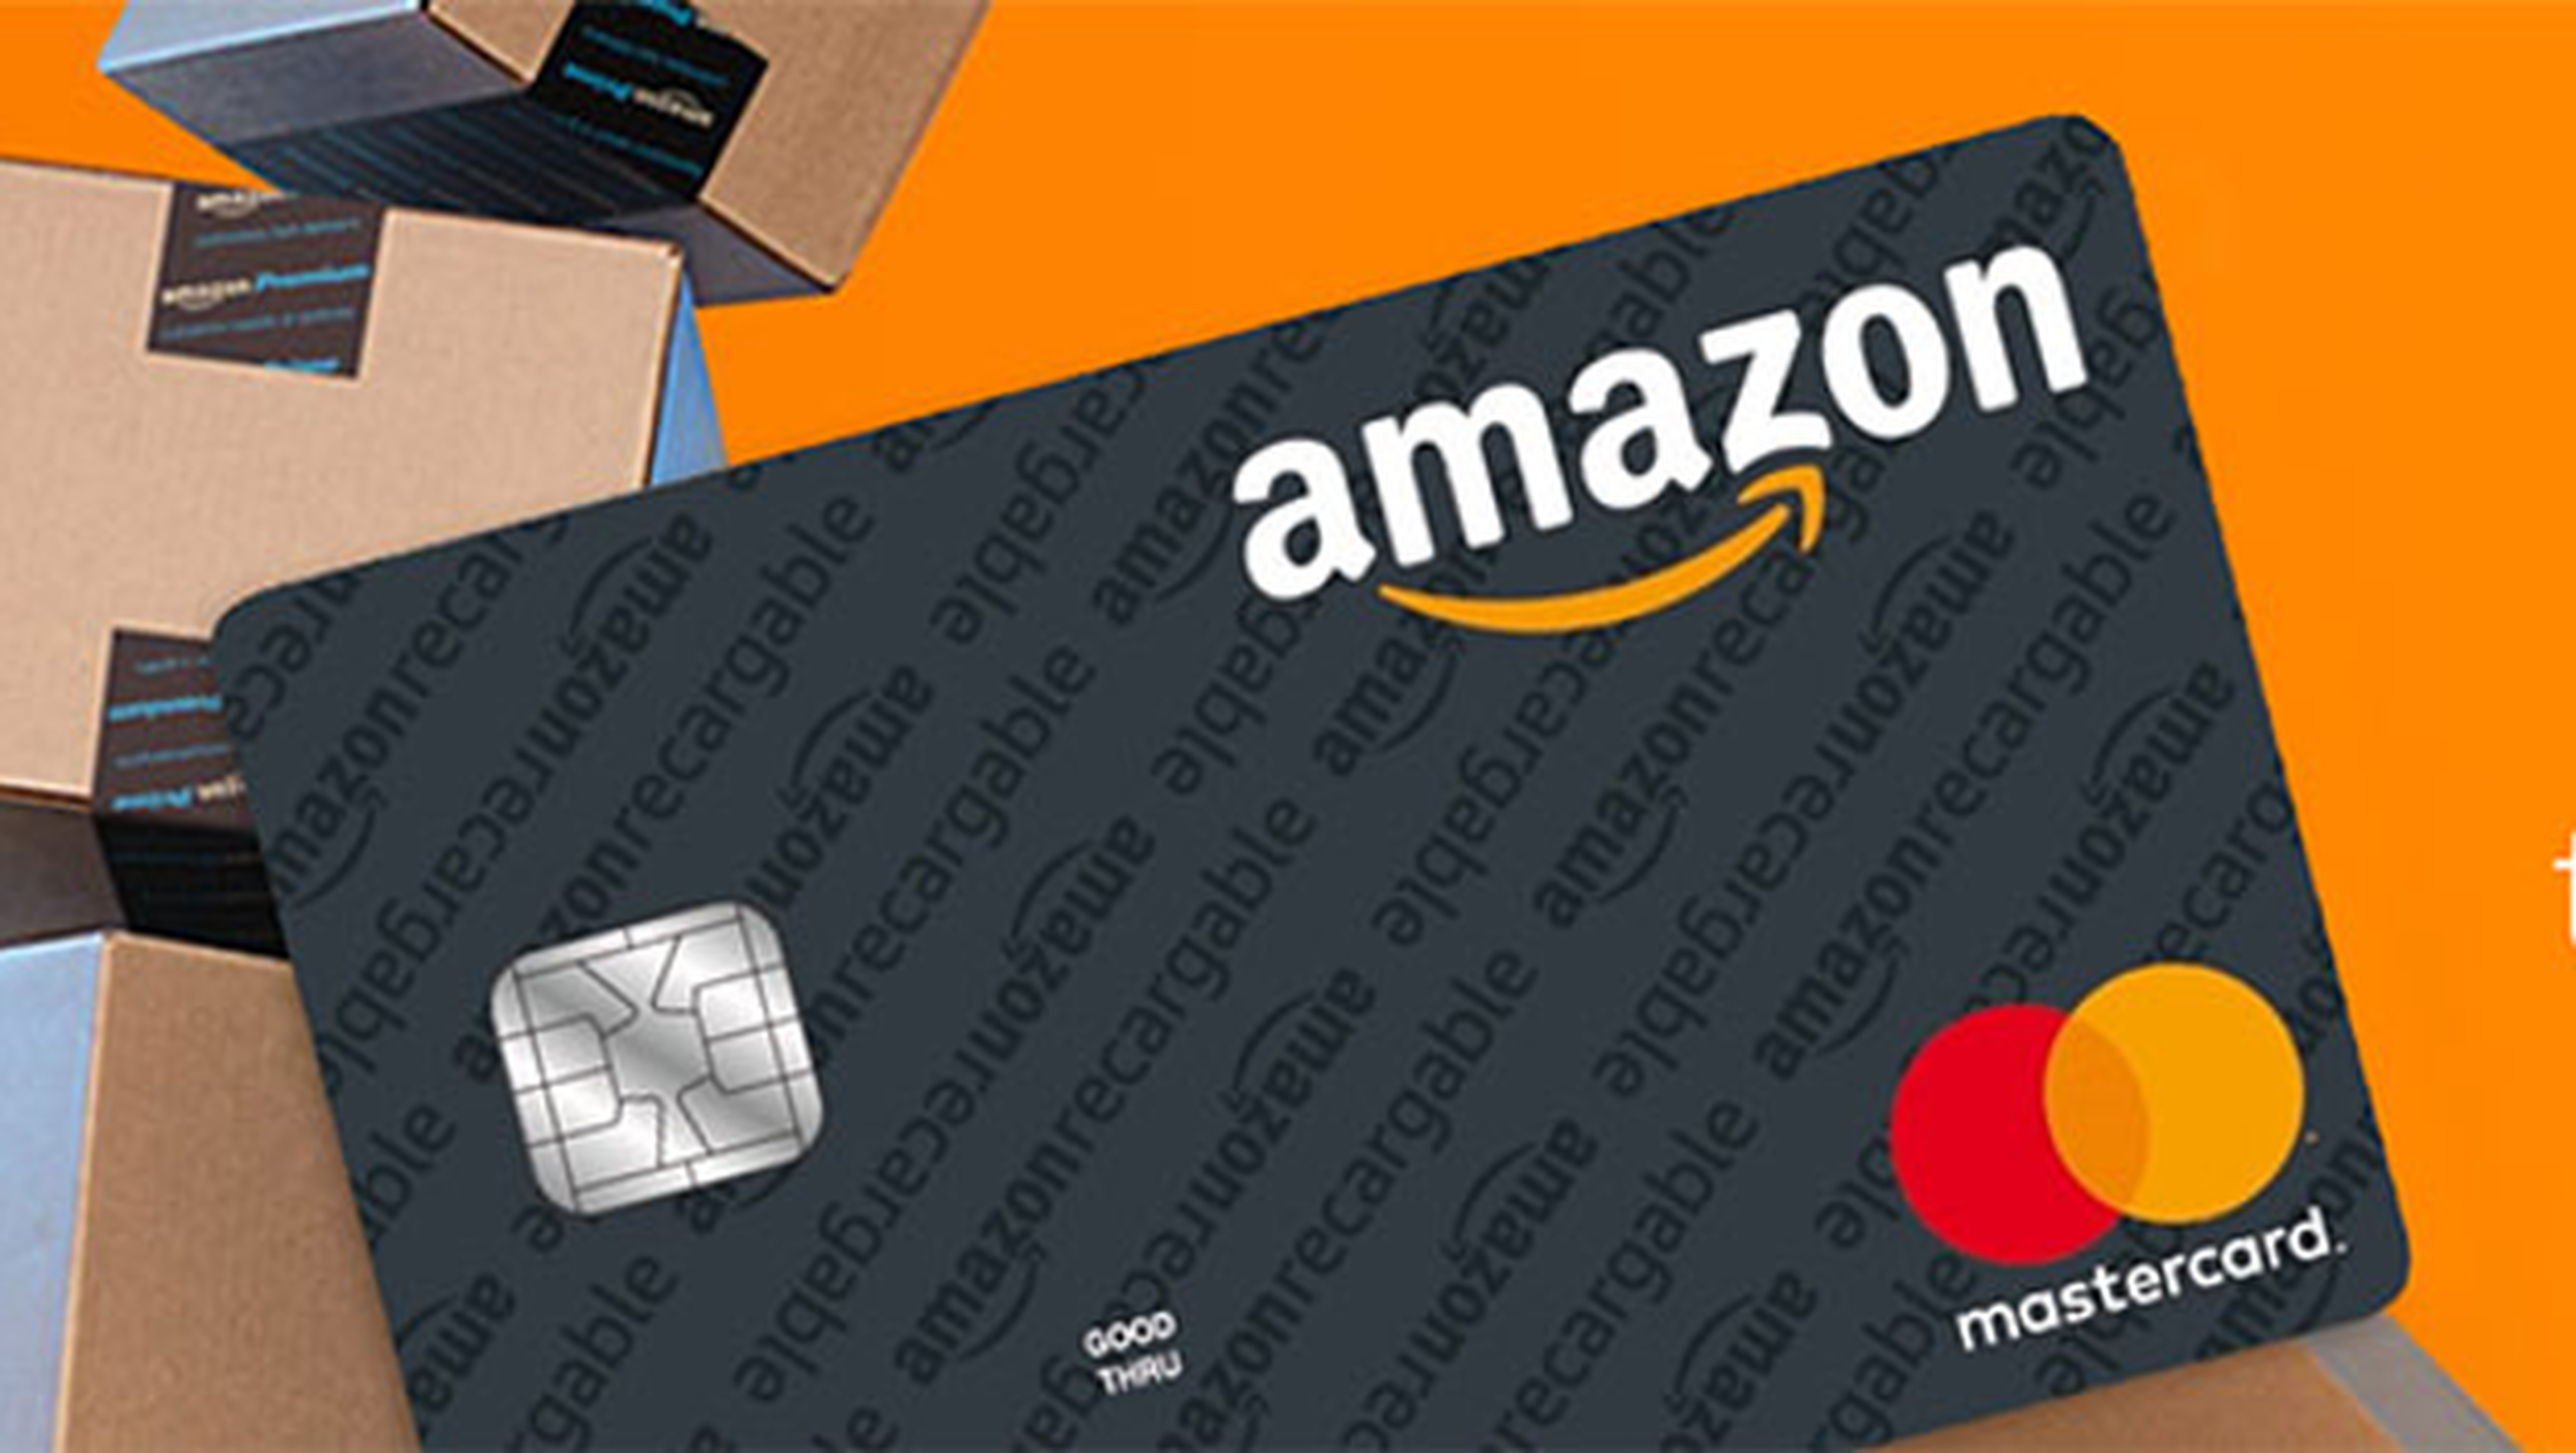 Tarjeta de débito Amazon Recargable llega a México.